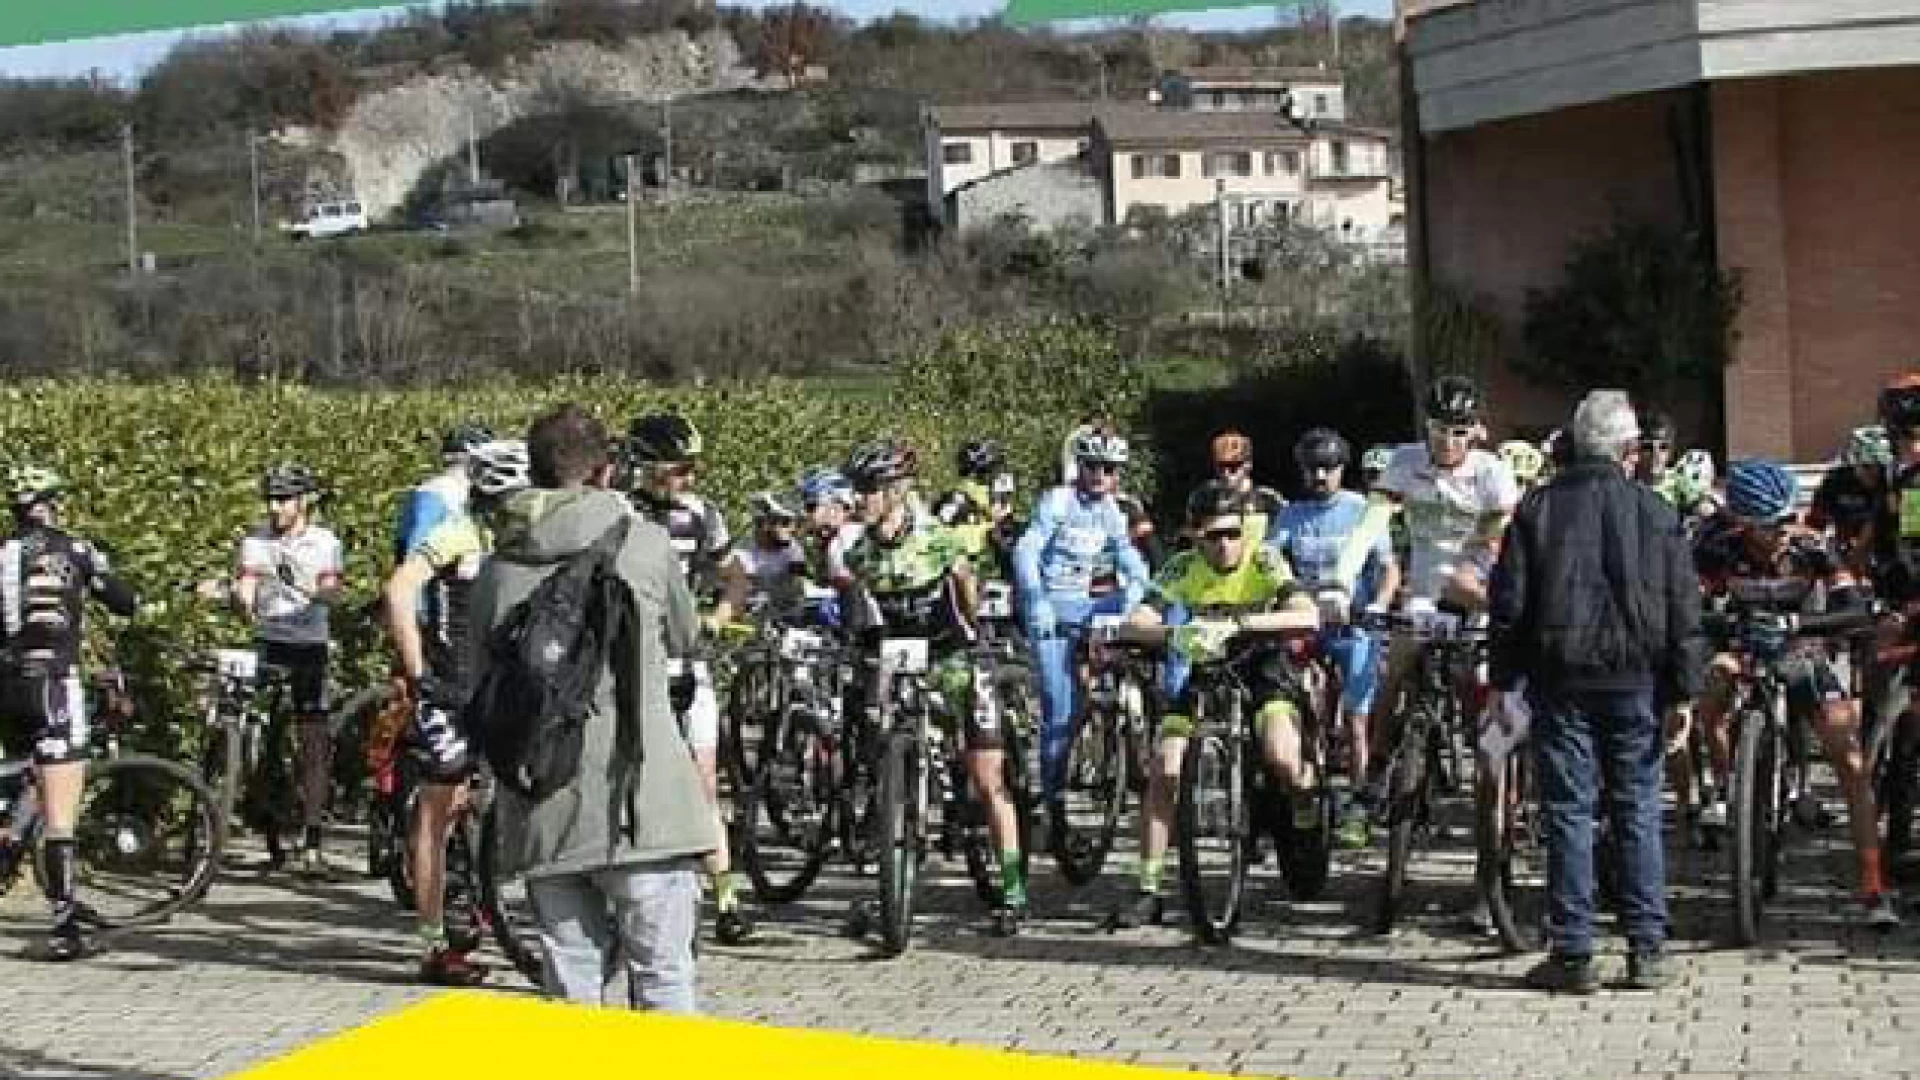 Quarto trofeo San Maria della Pace. Domenica 25 febbraio la sfida sulle Mountain Bike promossa dall’Asd G.C. Pentria Isernia.